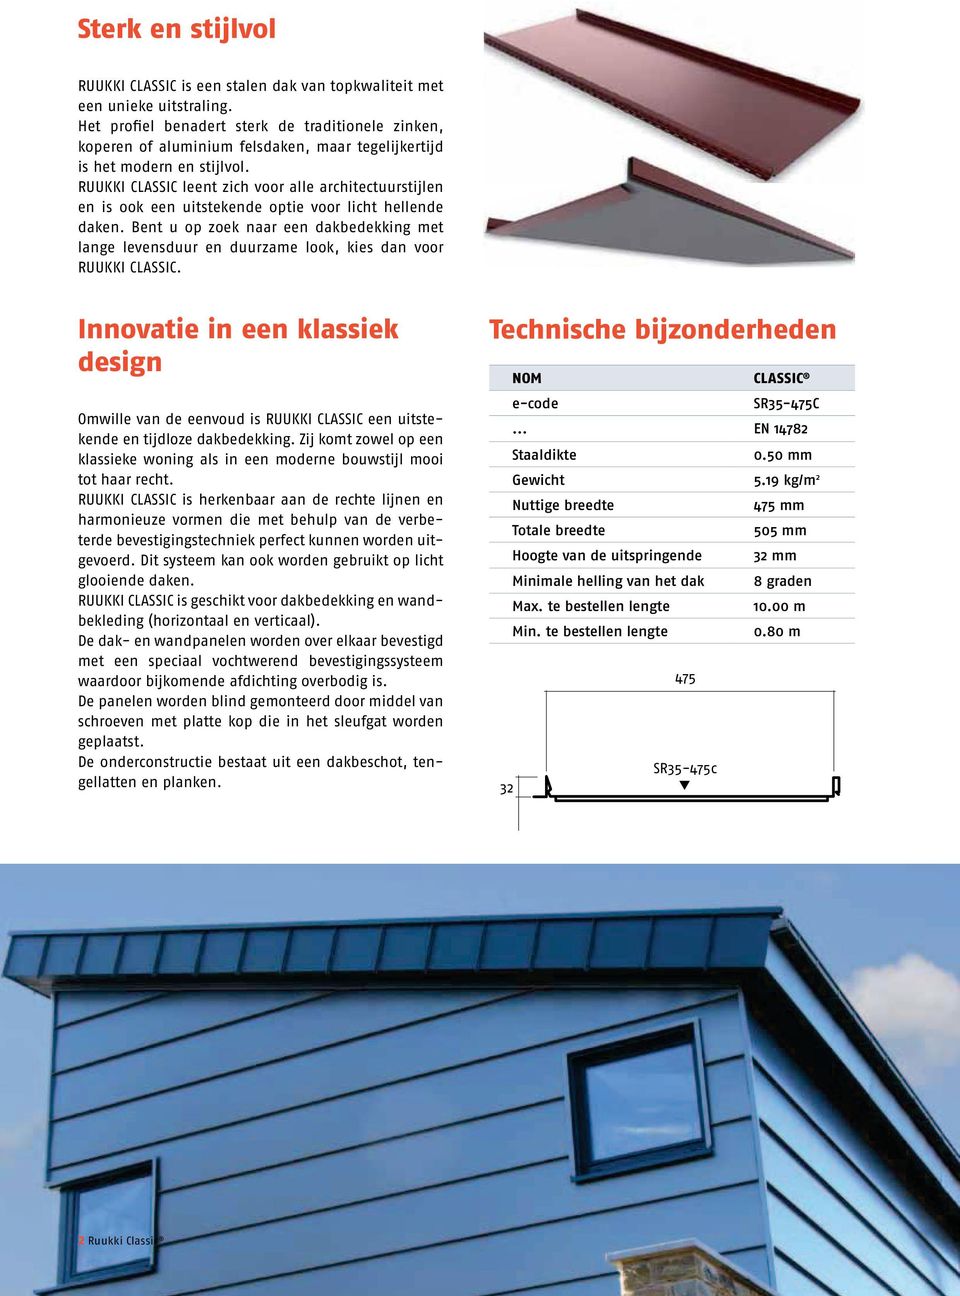 RUUKKI CLASSIC leent zich voor alle architectuurstijlen en is ook een uitstekende optie voor licht hellende daken.